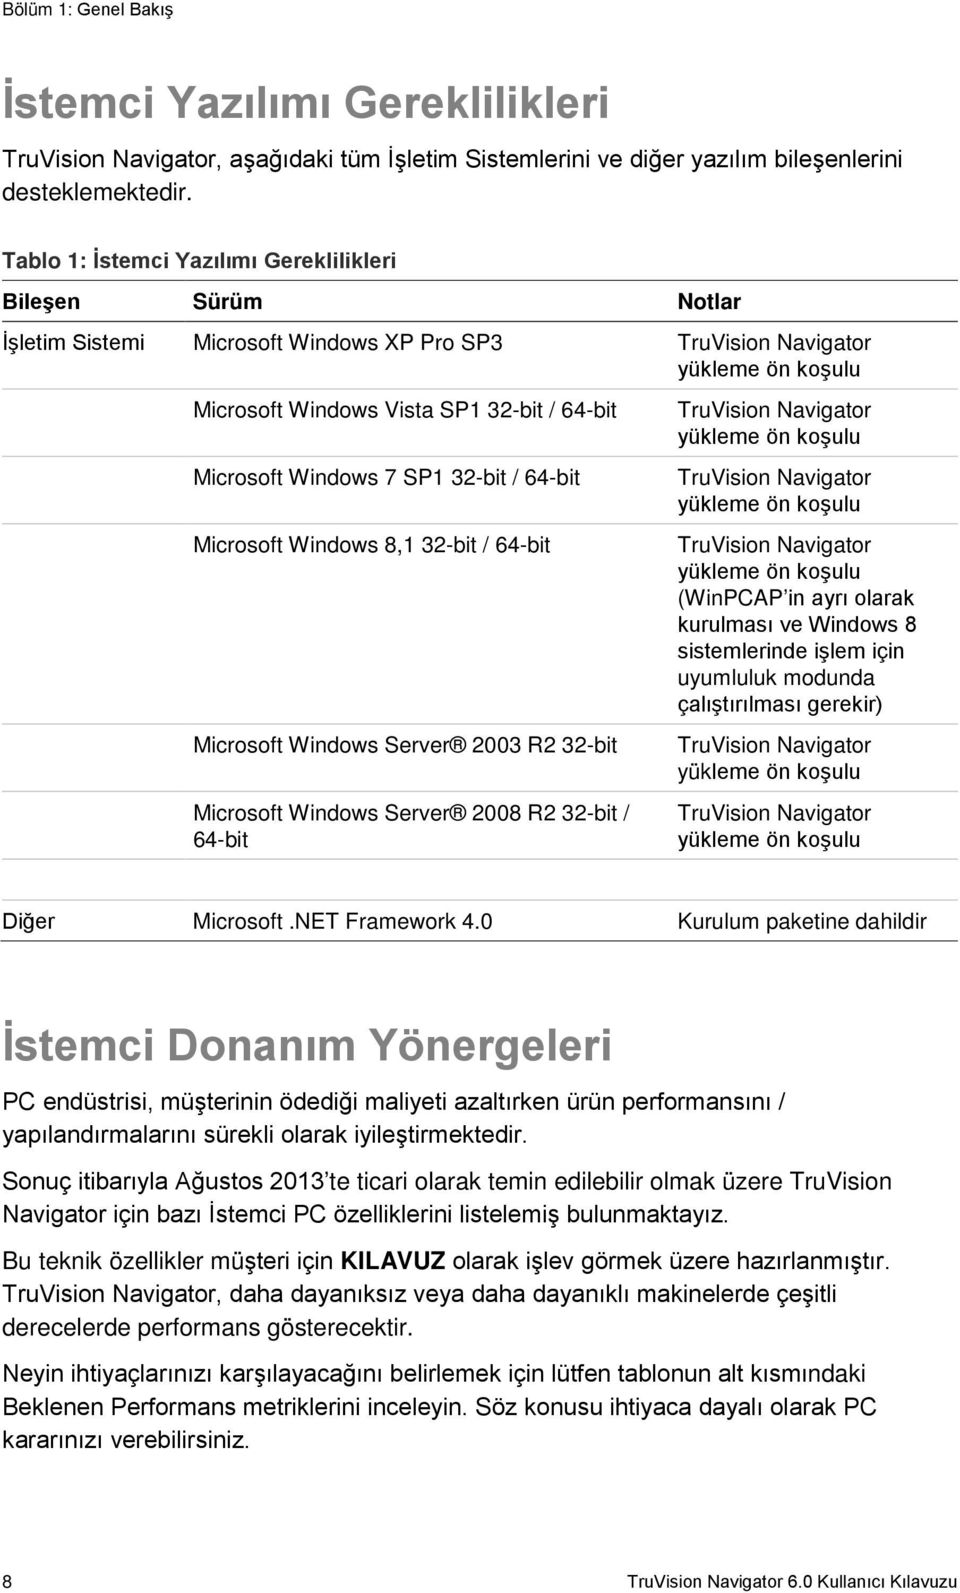 Windows 7 SP1 32-bit / 64-bit Microsoft Windows 8,1 32-bit / 64-bit Microsoft Windows Server 2003 R2 32-bit Microsoft Windows Server 2008 R2 32-bit / 64-bit TruVision Navigator yükleme ön koşulu